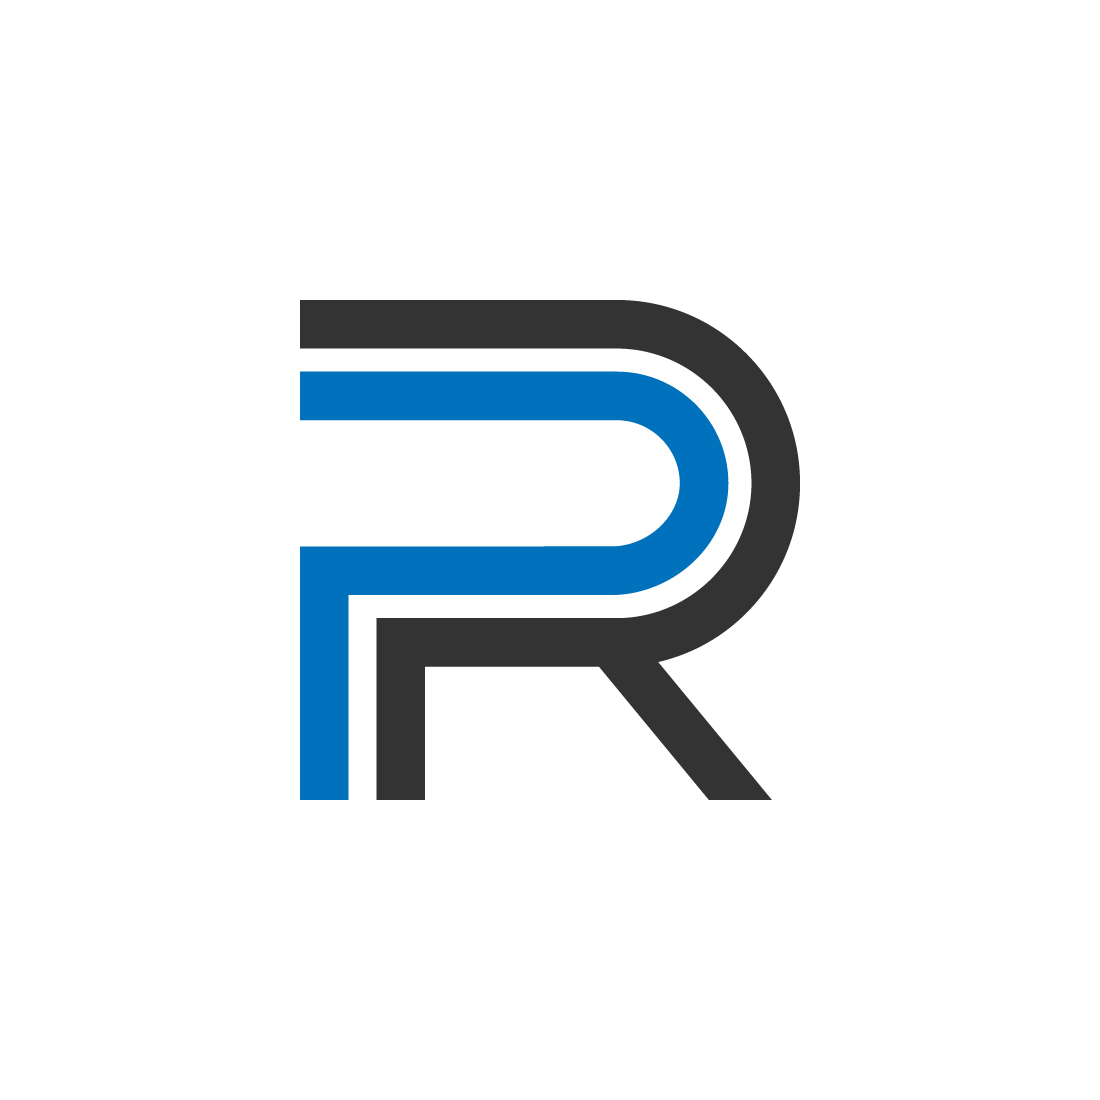 PR logo design preview image.